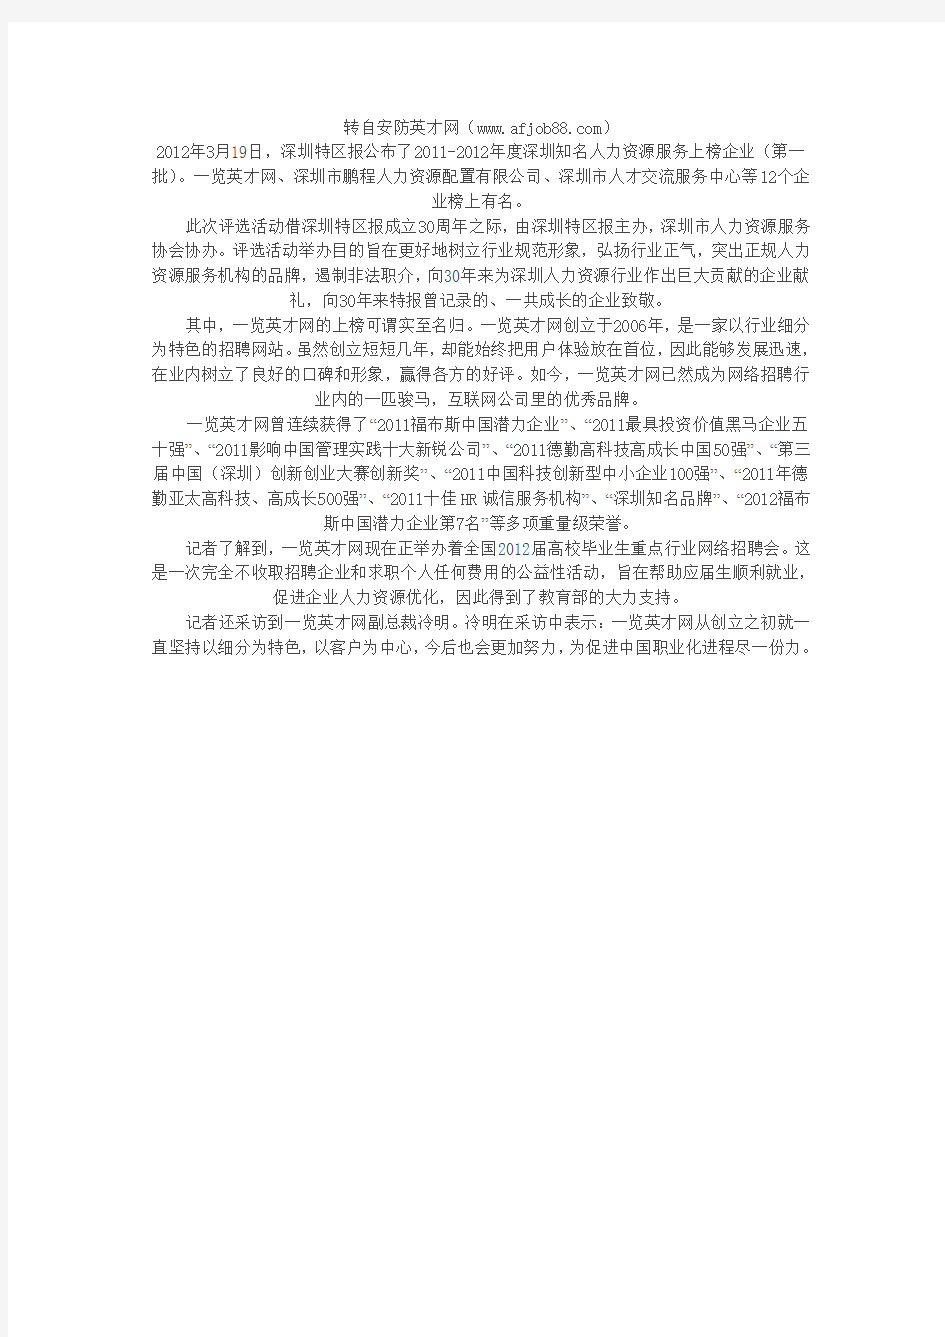 2011-2012年度深圳知名人力资源服务企业名单公布